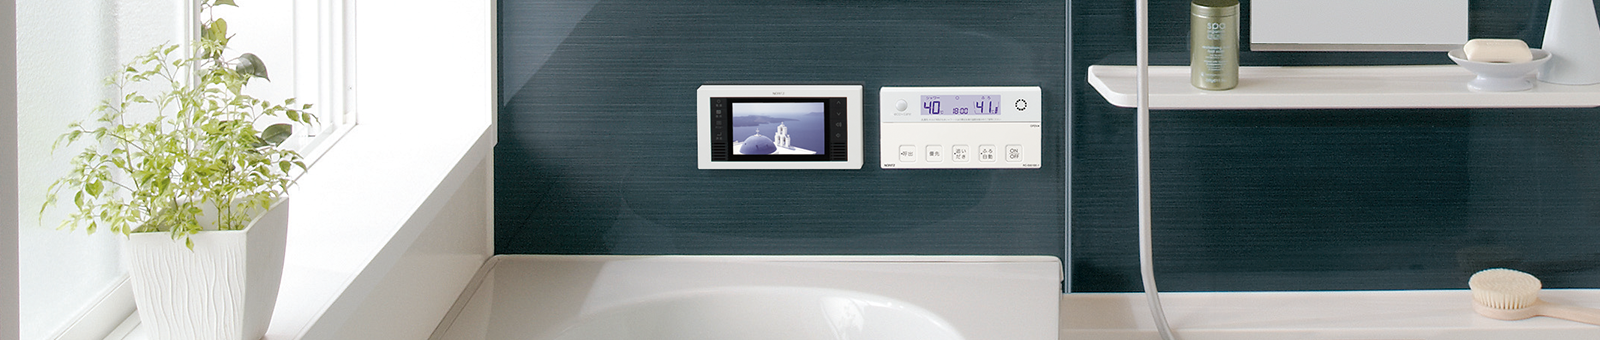 上等 ノーリツ 浴室用テレビ YTVD501W 5V型ワイドワンセグ防水テレビ